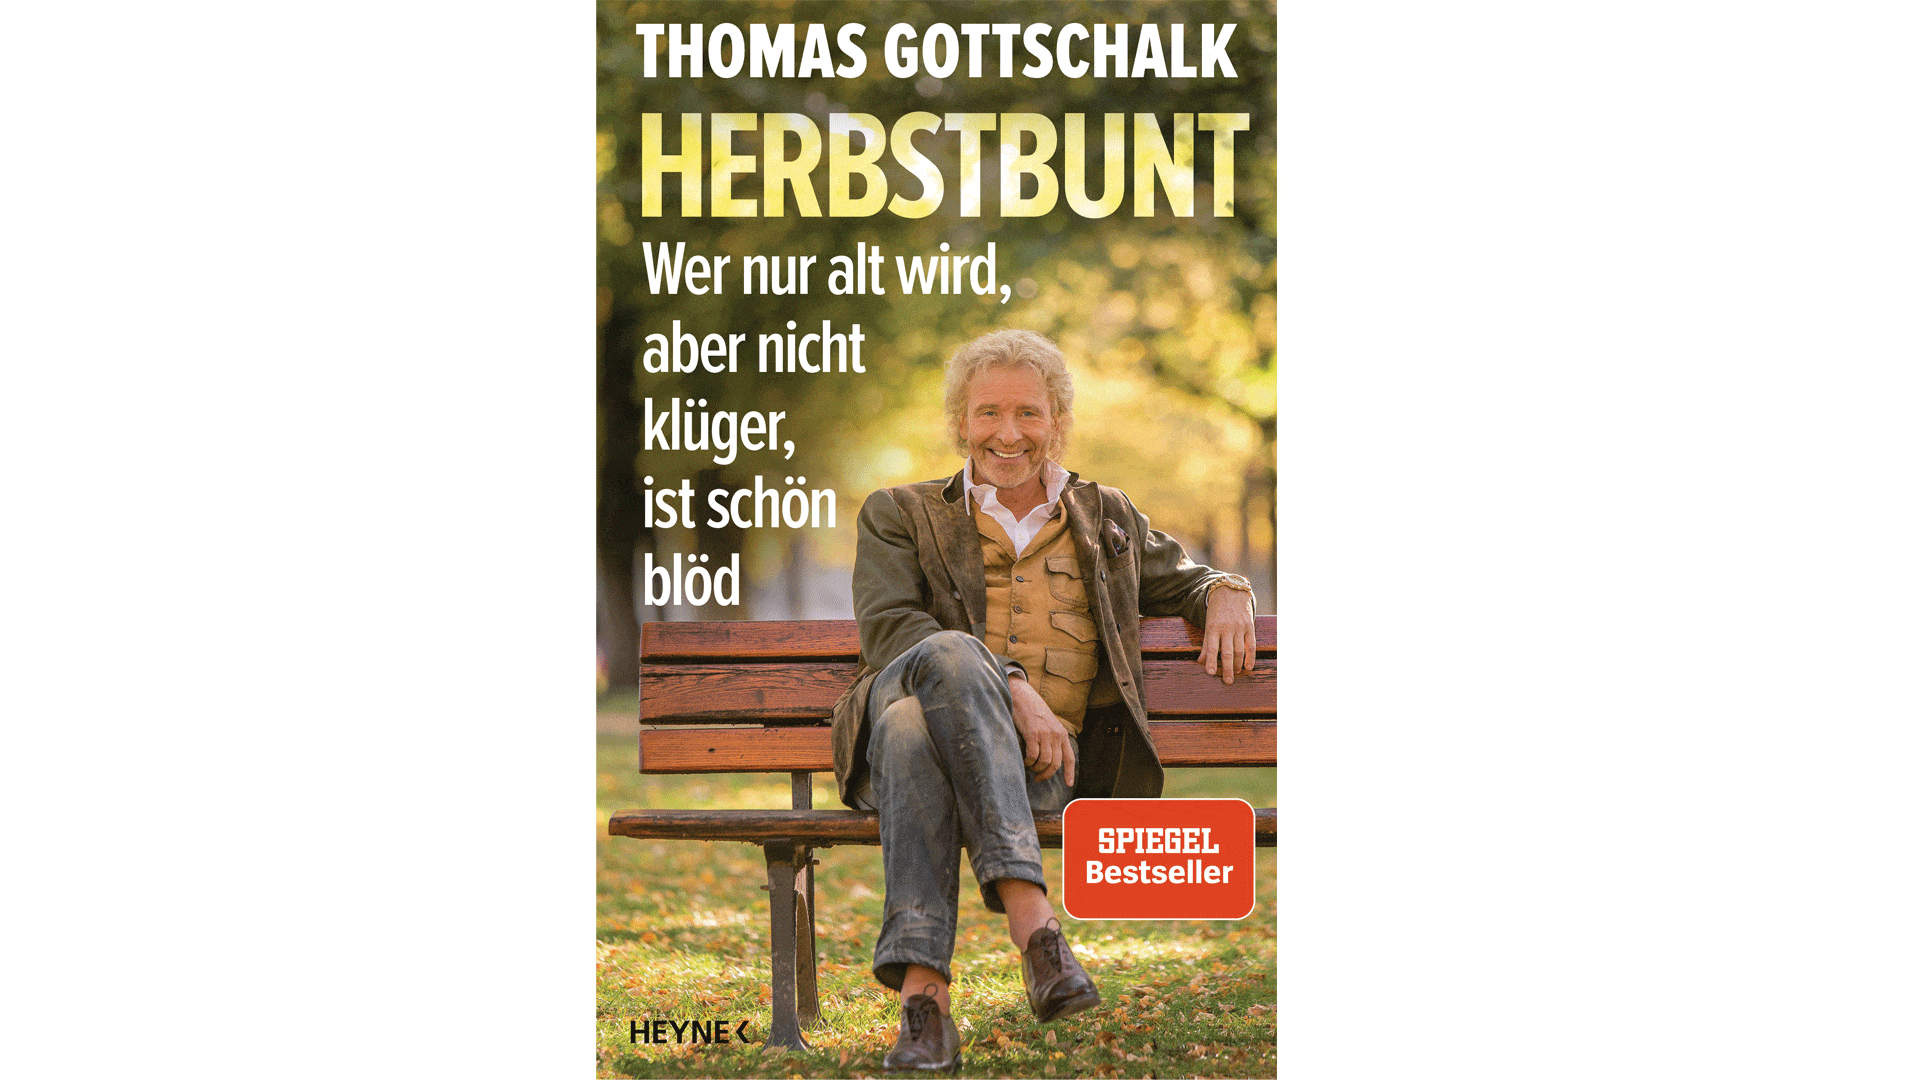 Thomas Gottschalk blickt in „Herbstbunt“ auf sein Leben zurück